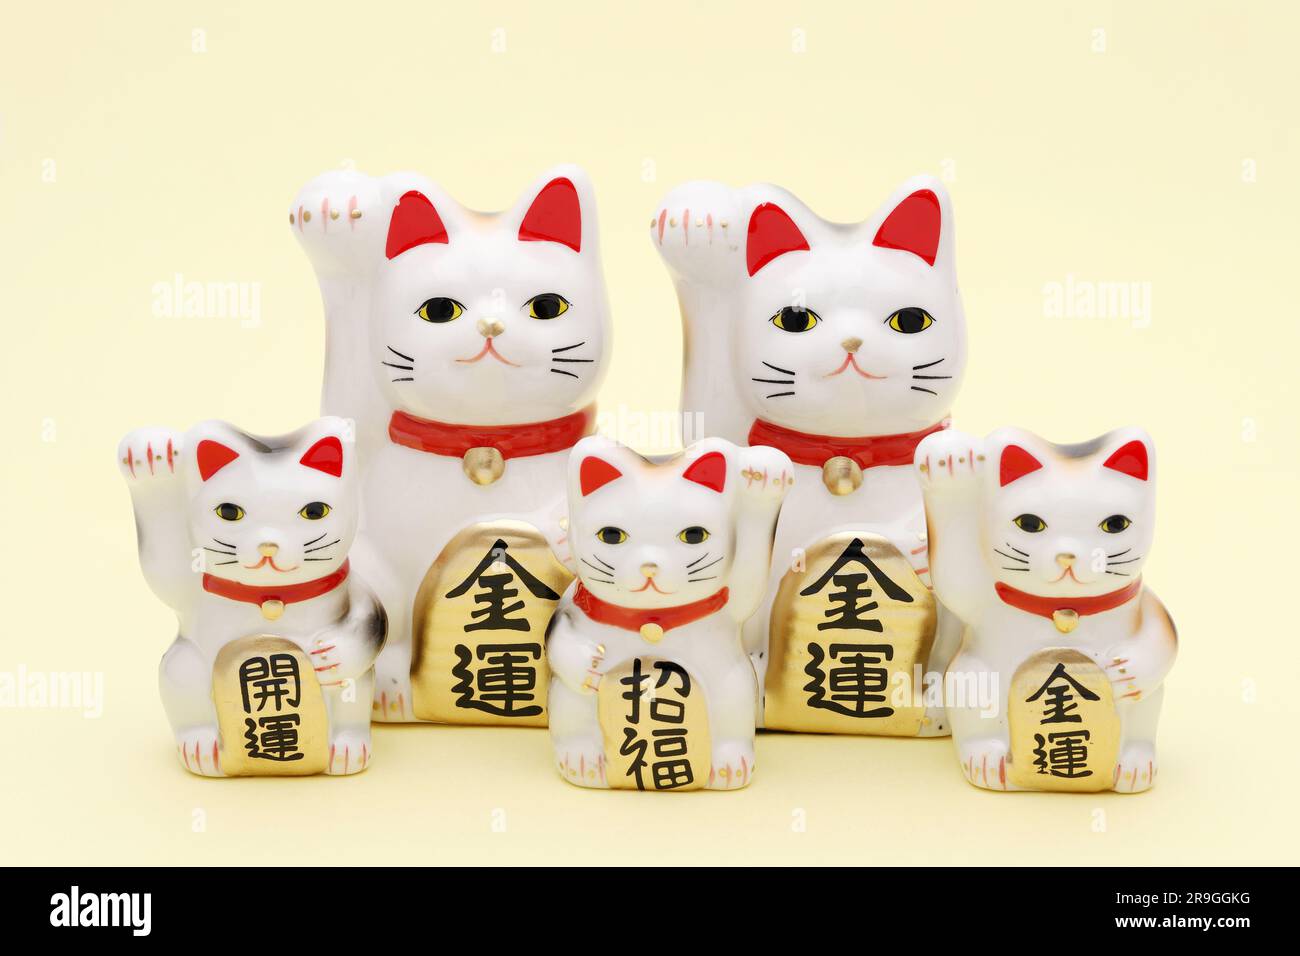 Gatto fortunato giapponese su sfondo giallo, parola giapponese di questa fotografia significa "fortuna migliore, benedizione, fortuna economica" Foto Stock